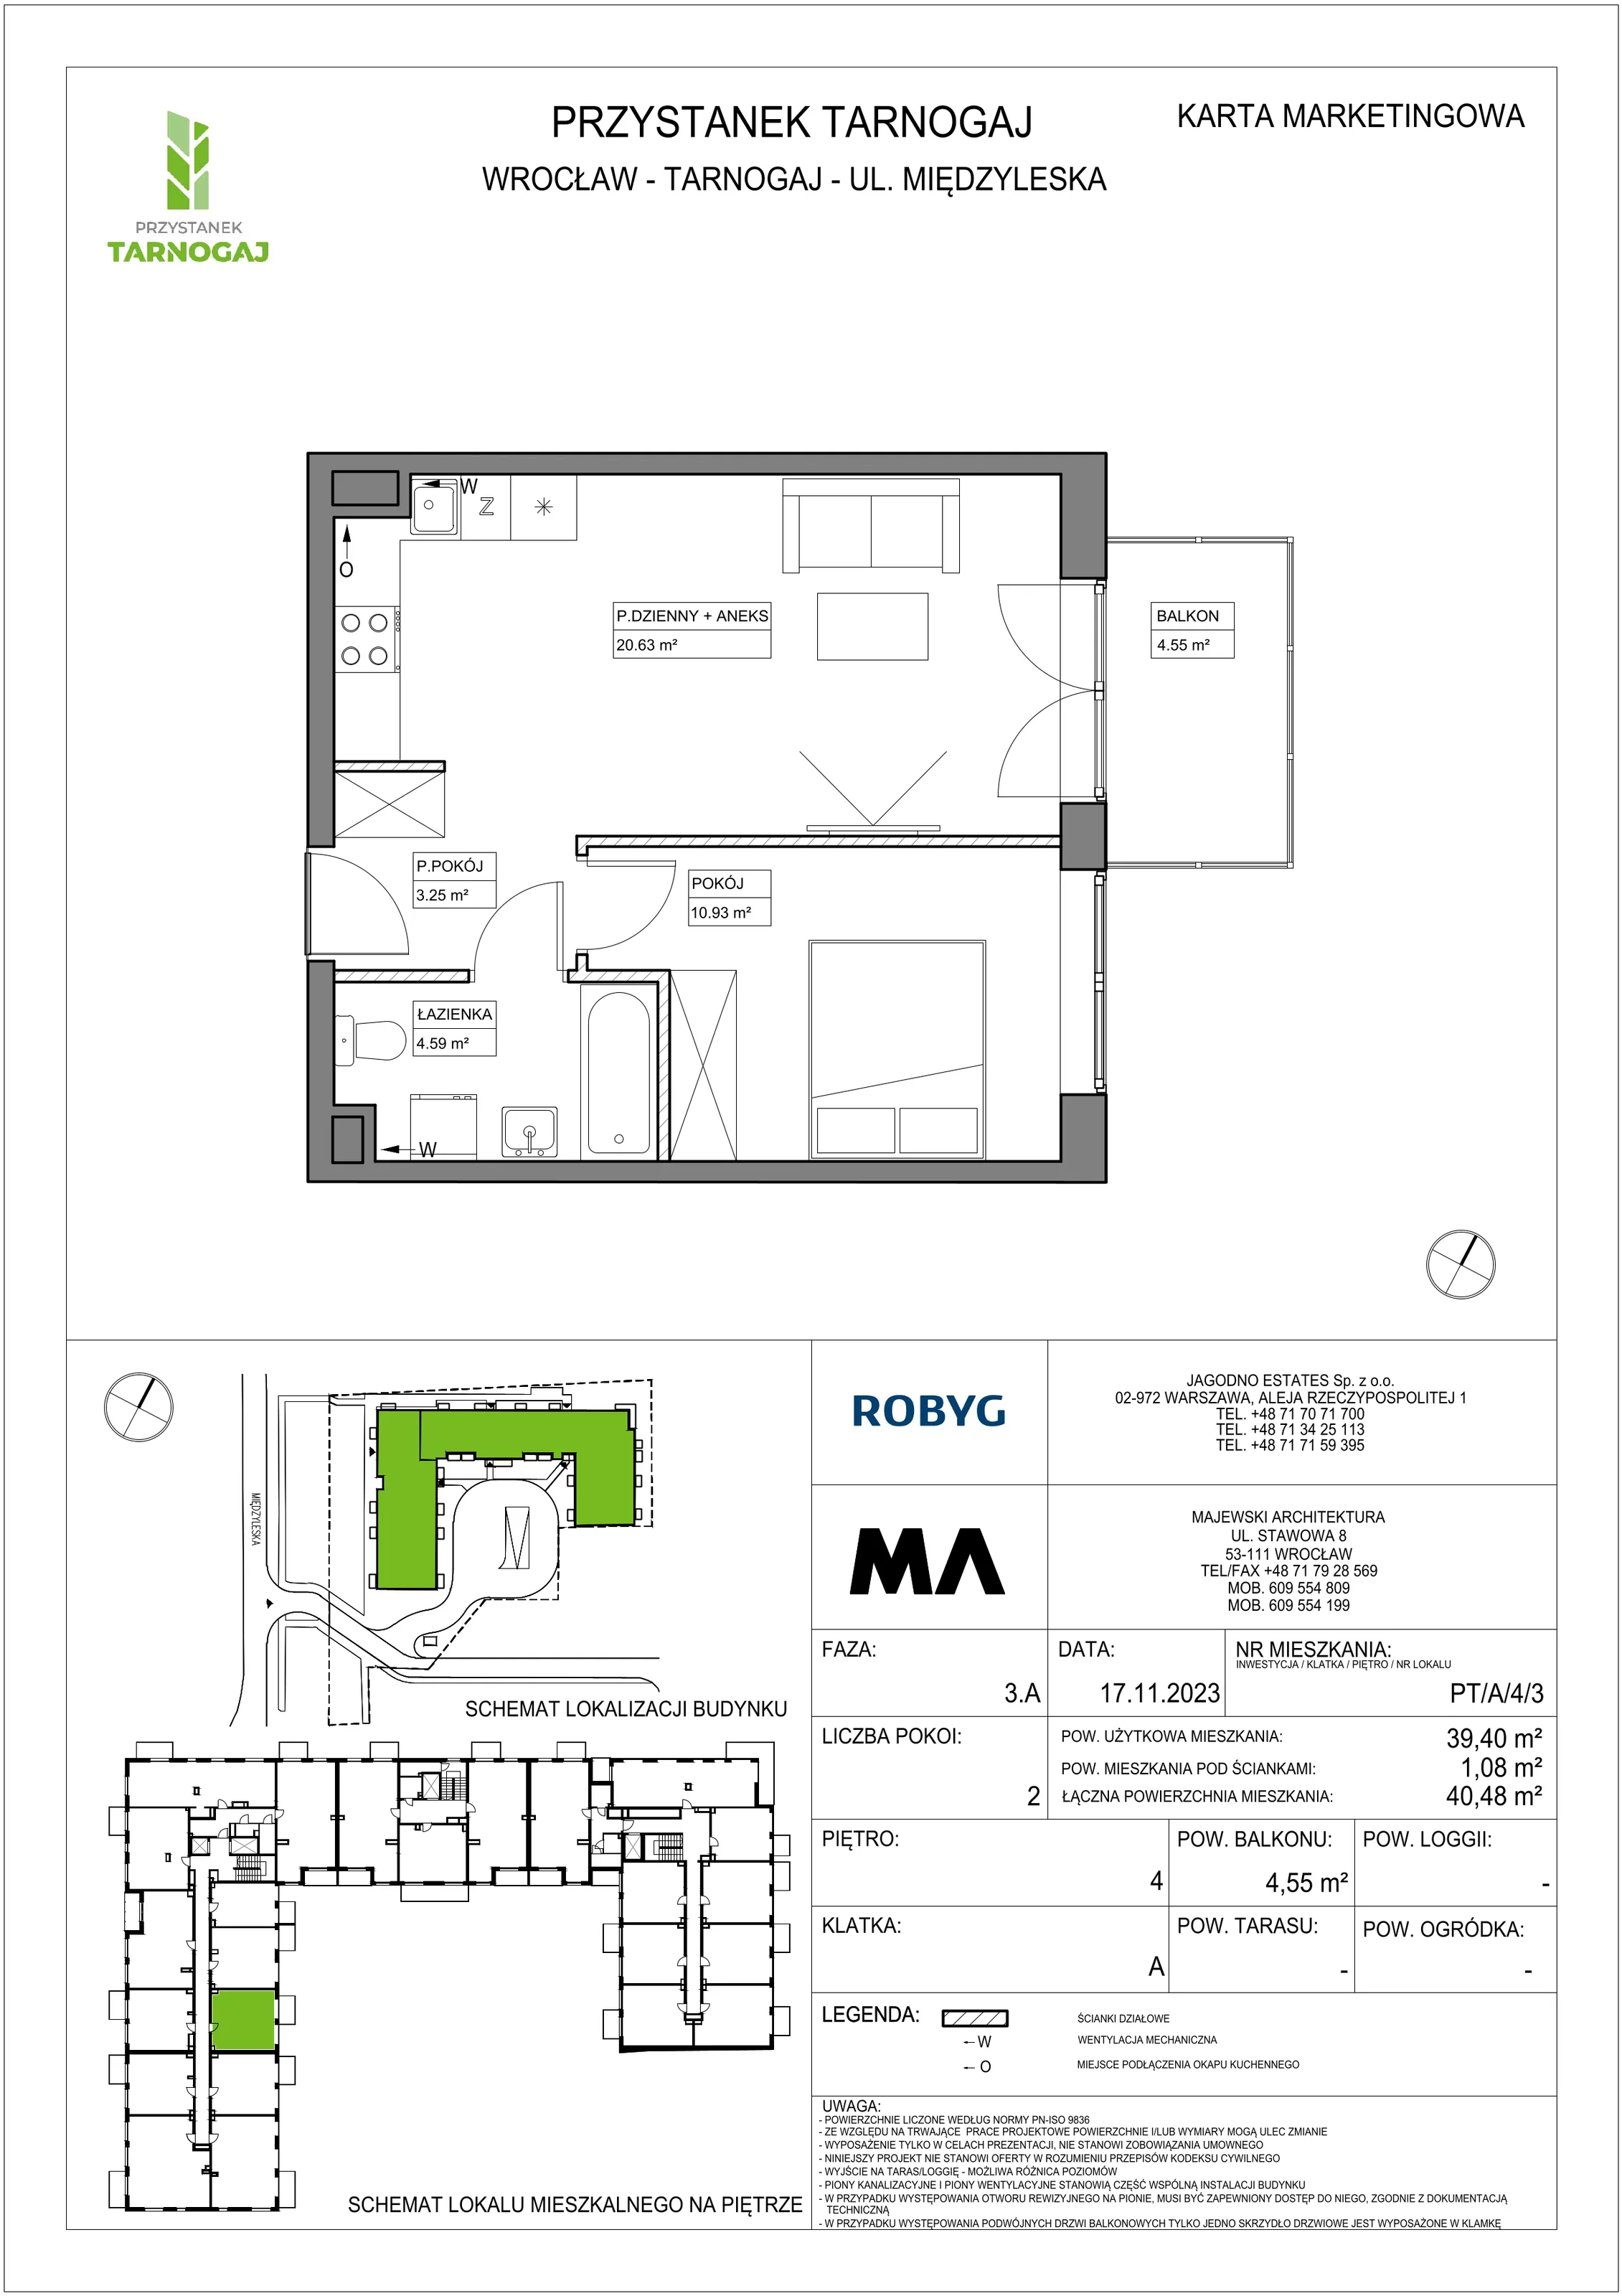 Mieszkanie 39,40 m², piętro 4, oferta nr PT/A/4/3, Przystanek Tarnogaj, Wrocław, Tarnogaj, Krzyki, ul. Międzyleska / Gazowa